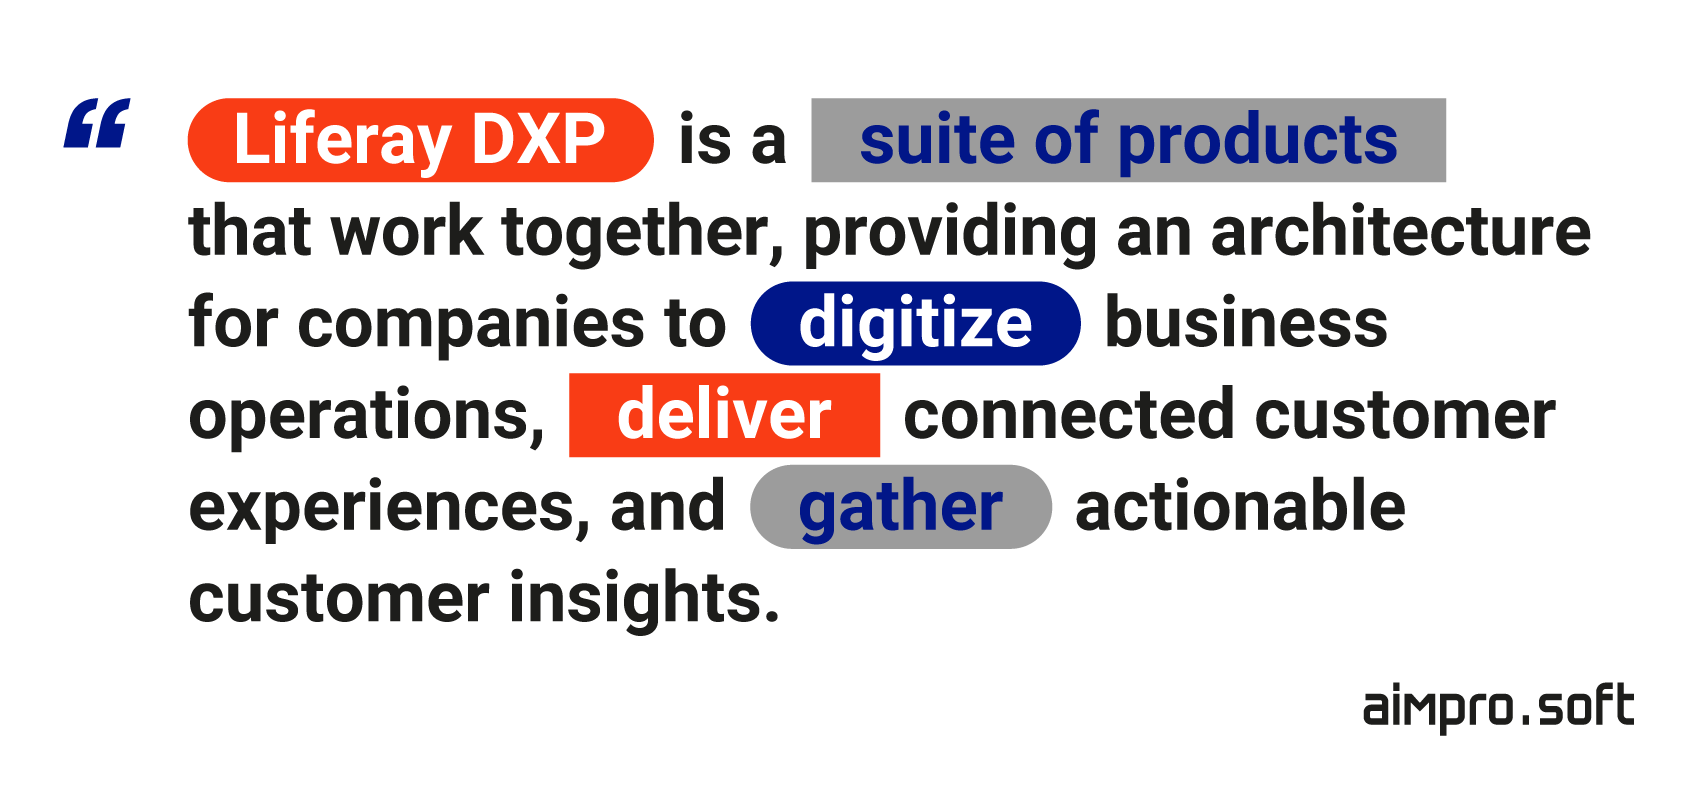 The essence of Liferay DXP